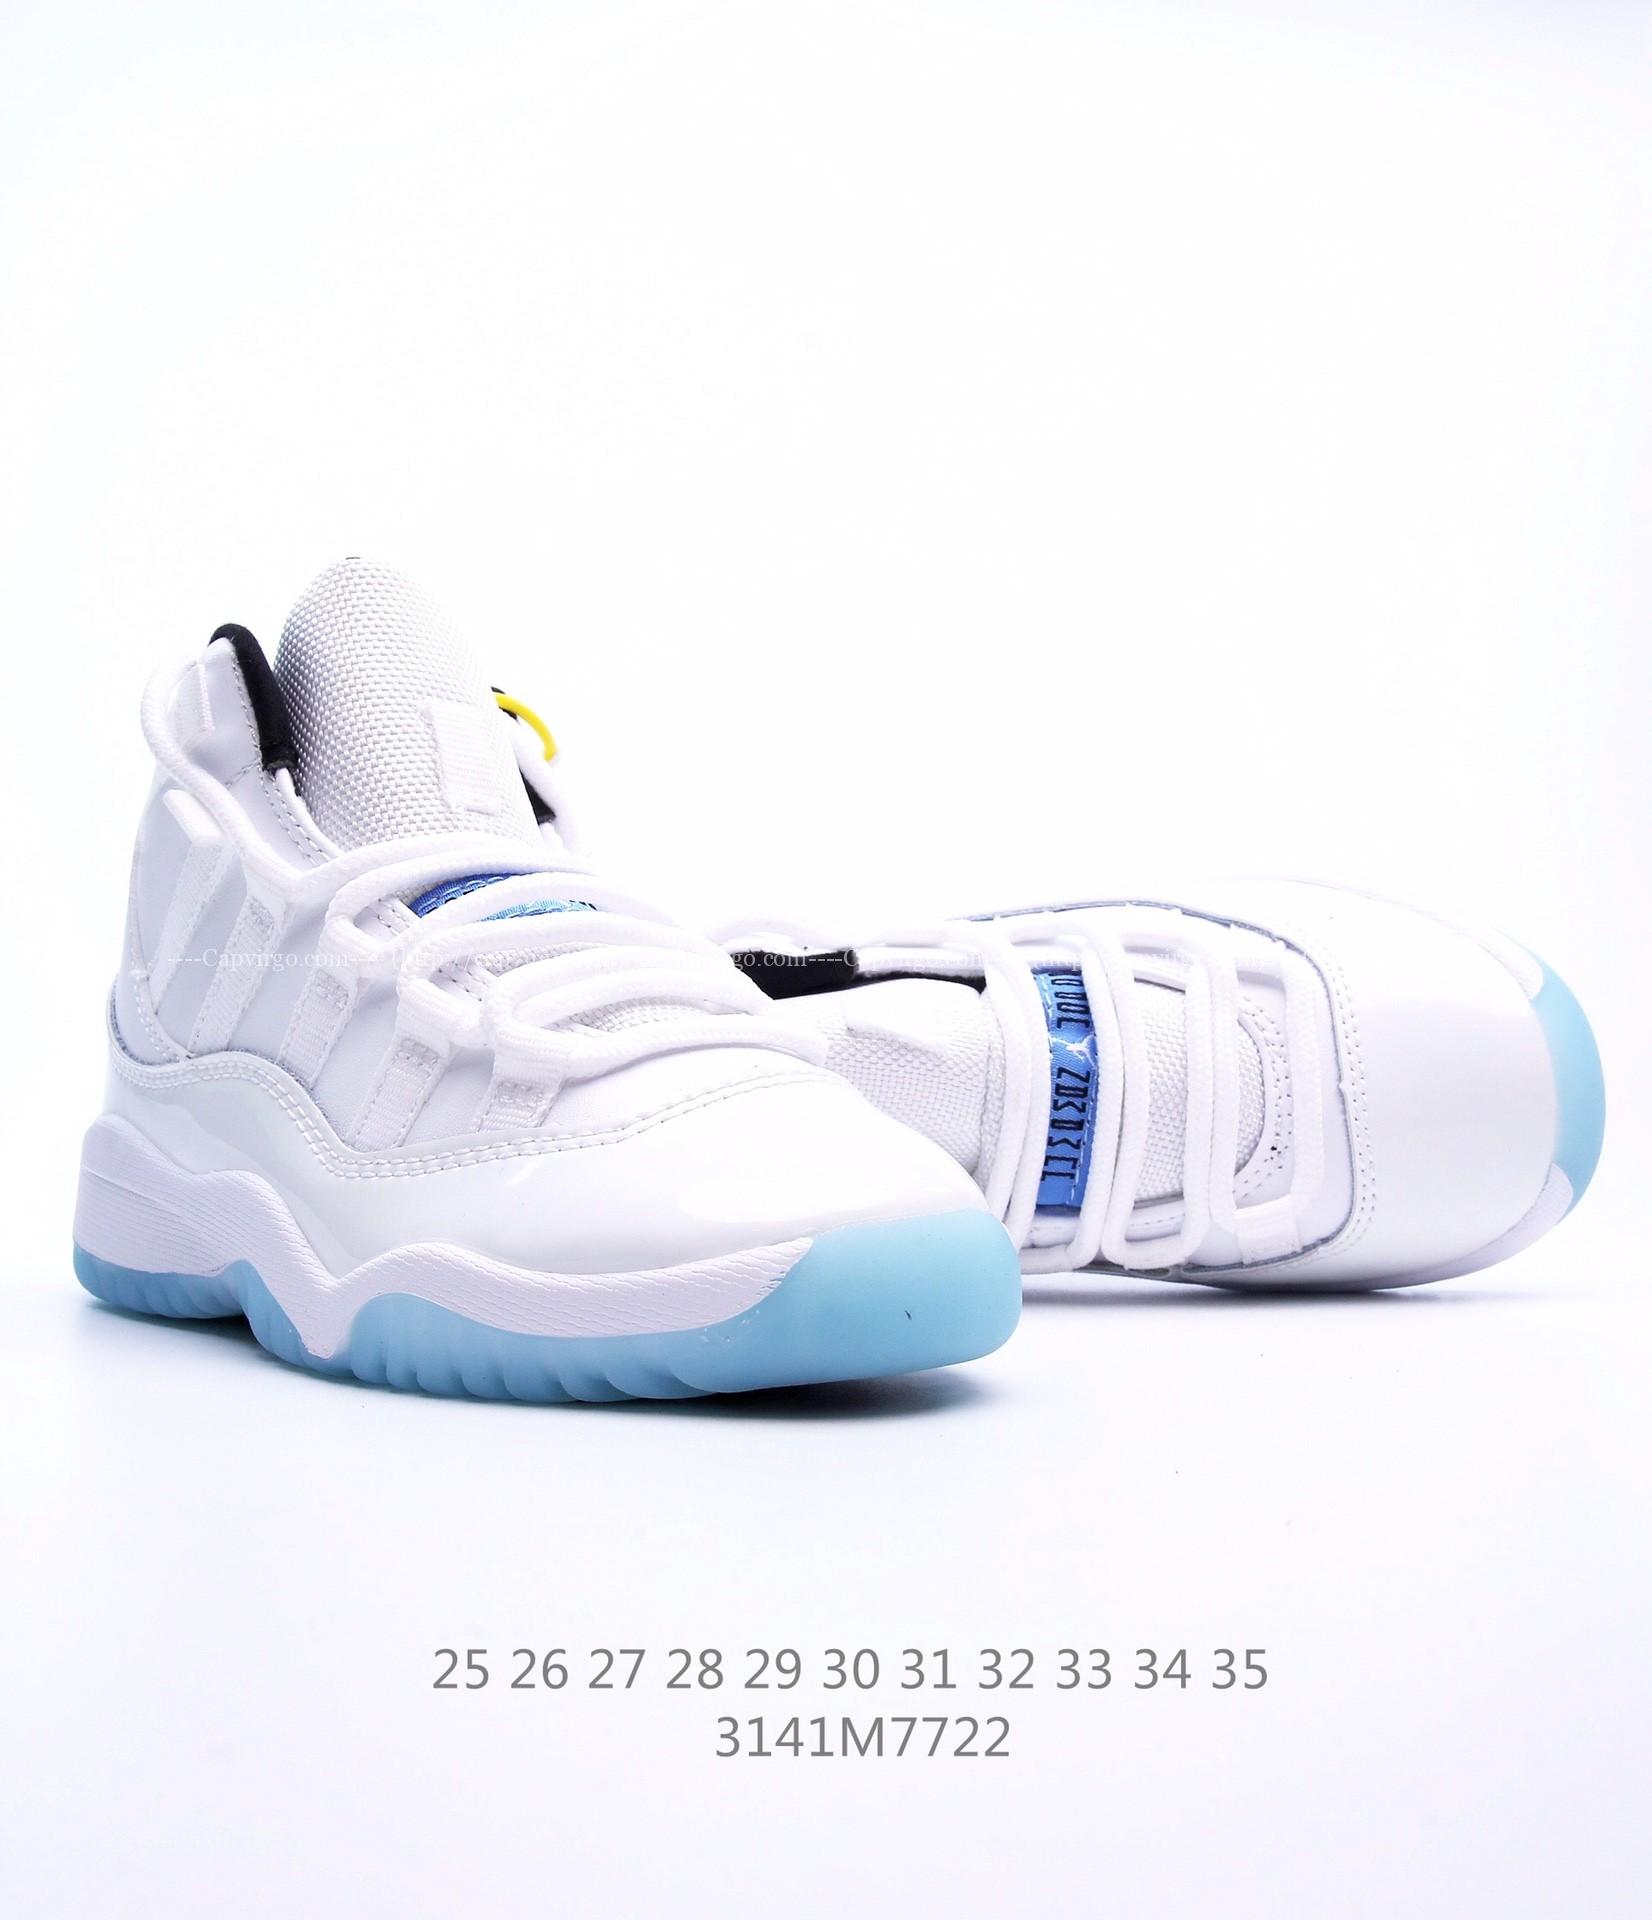 Giày Air Jordan 11 Platinum Tint trẻ em siêu cấp màu trắng logo xanh